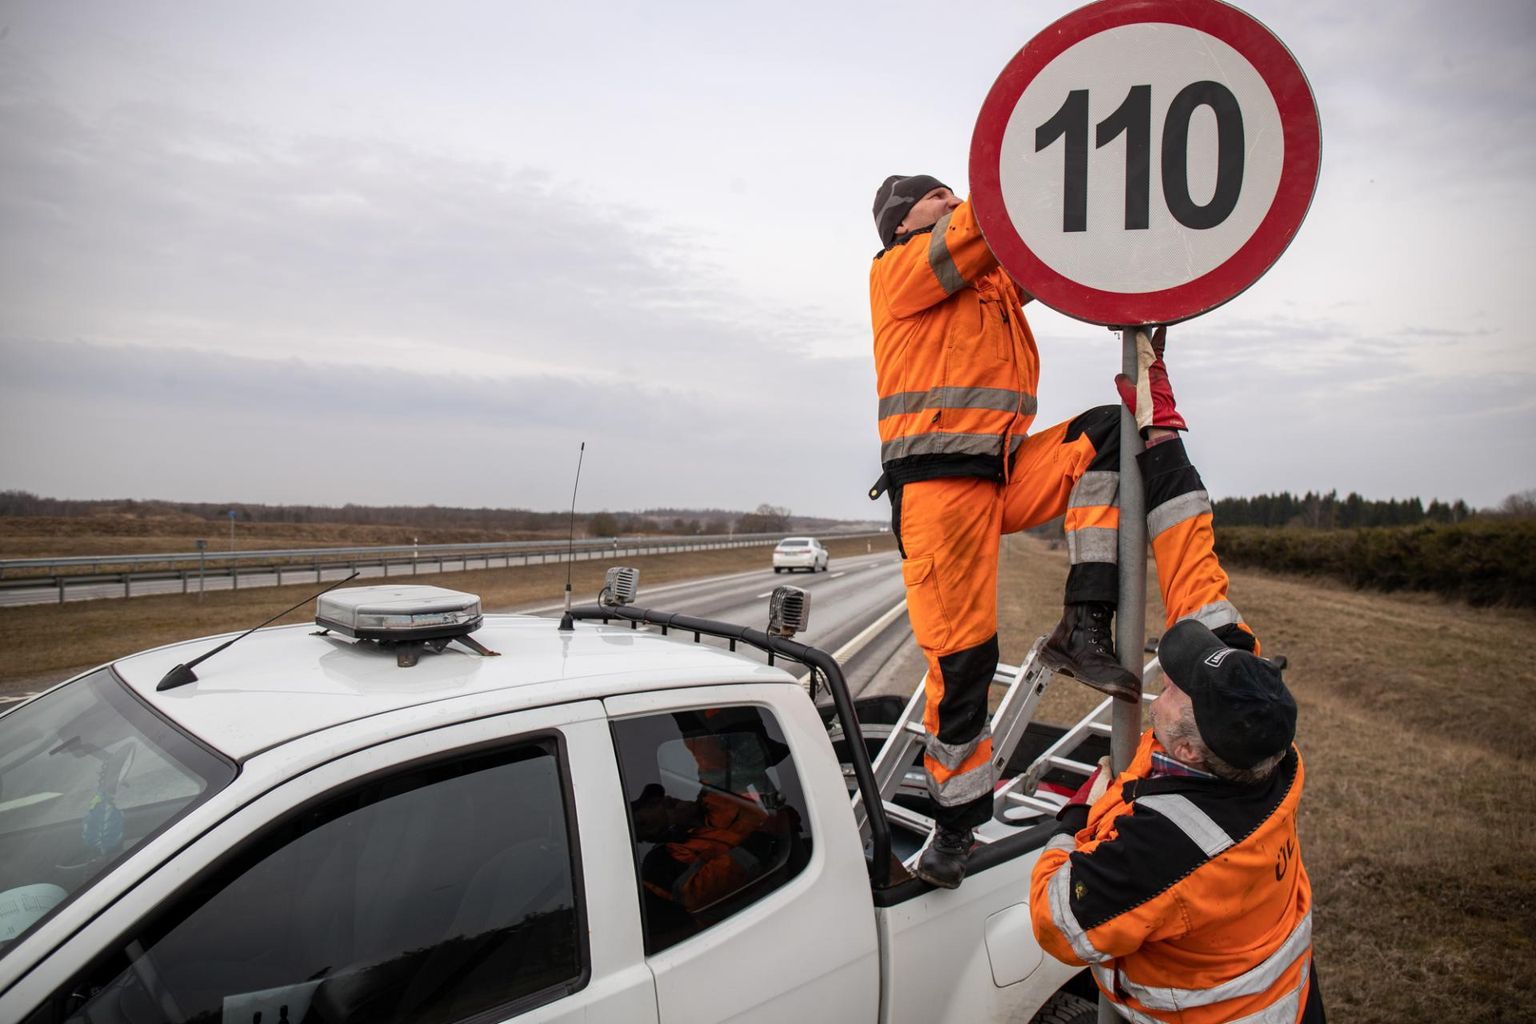 Maanteeamet alustas eile kiiruspiiri tõstmist eraldatud sõidusuundadega riigiteedel. 110 kilomeetrit tunnis tohib sõita 143 kilomeetril, 25 kilomeetril tõstetakse kiiruspiir 100-le. Kaherajalistel teedel tohib sõita kuni 90 kilomeetrit tunnis. Pildil paigaldavad Hannes ja Arne liiklusmärke Tallinna-Narva maanteele. PM